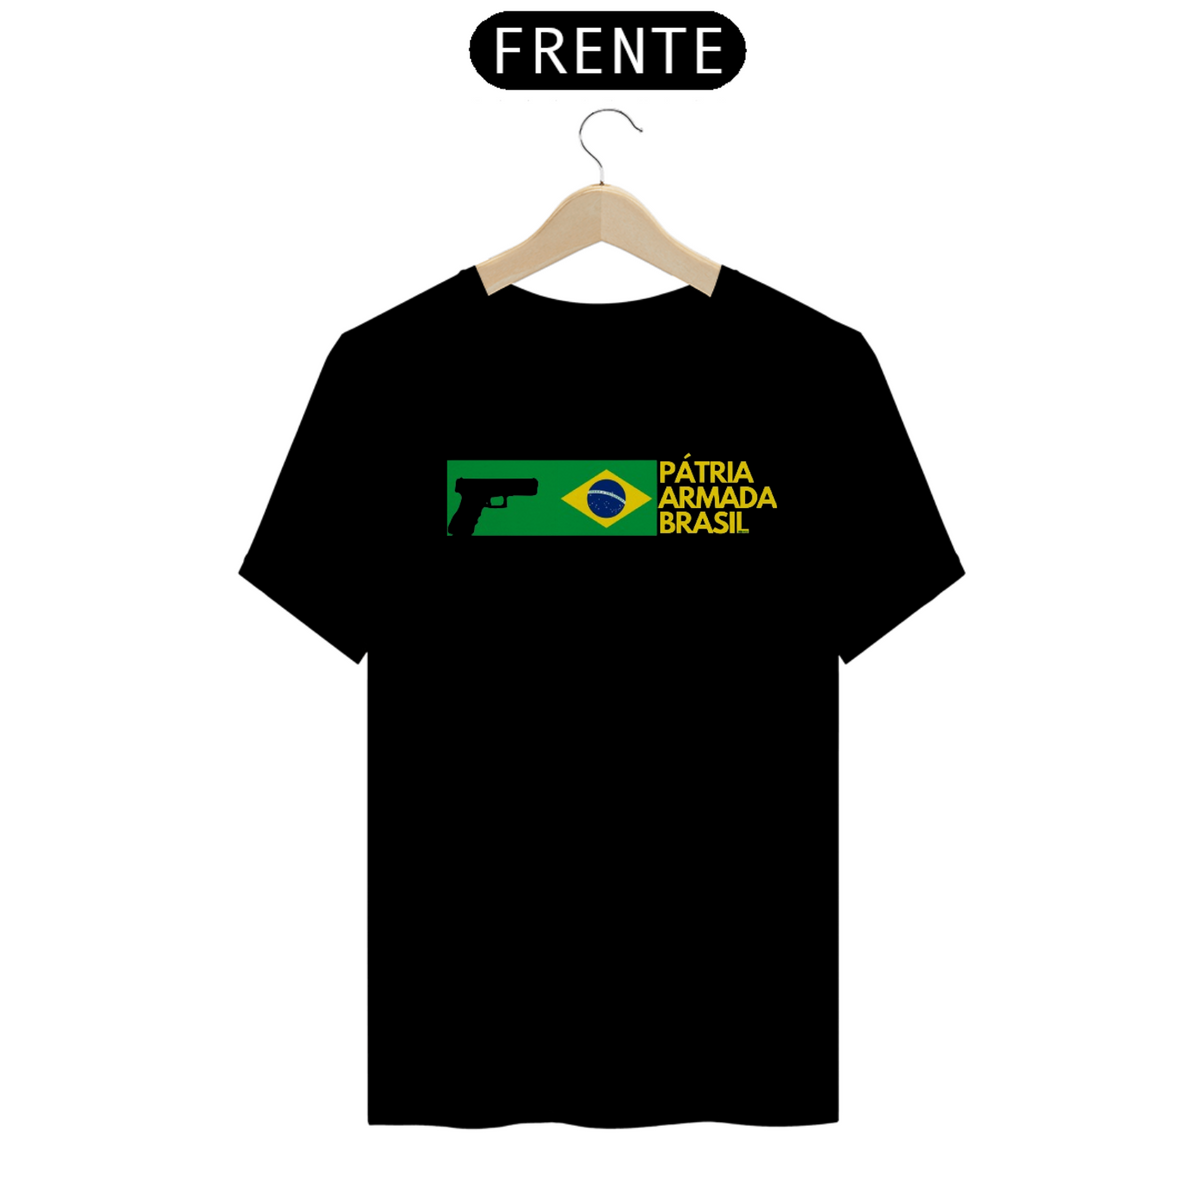 Nome do produto: Camiseta Pátria Armada Brasil